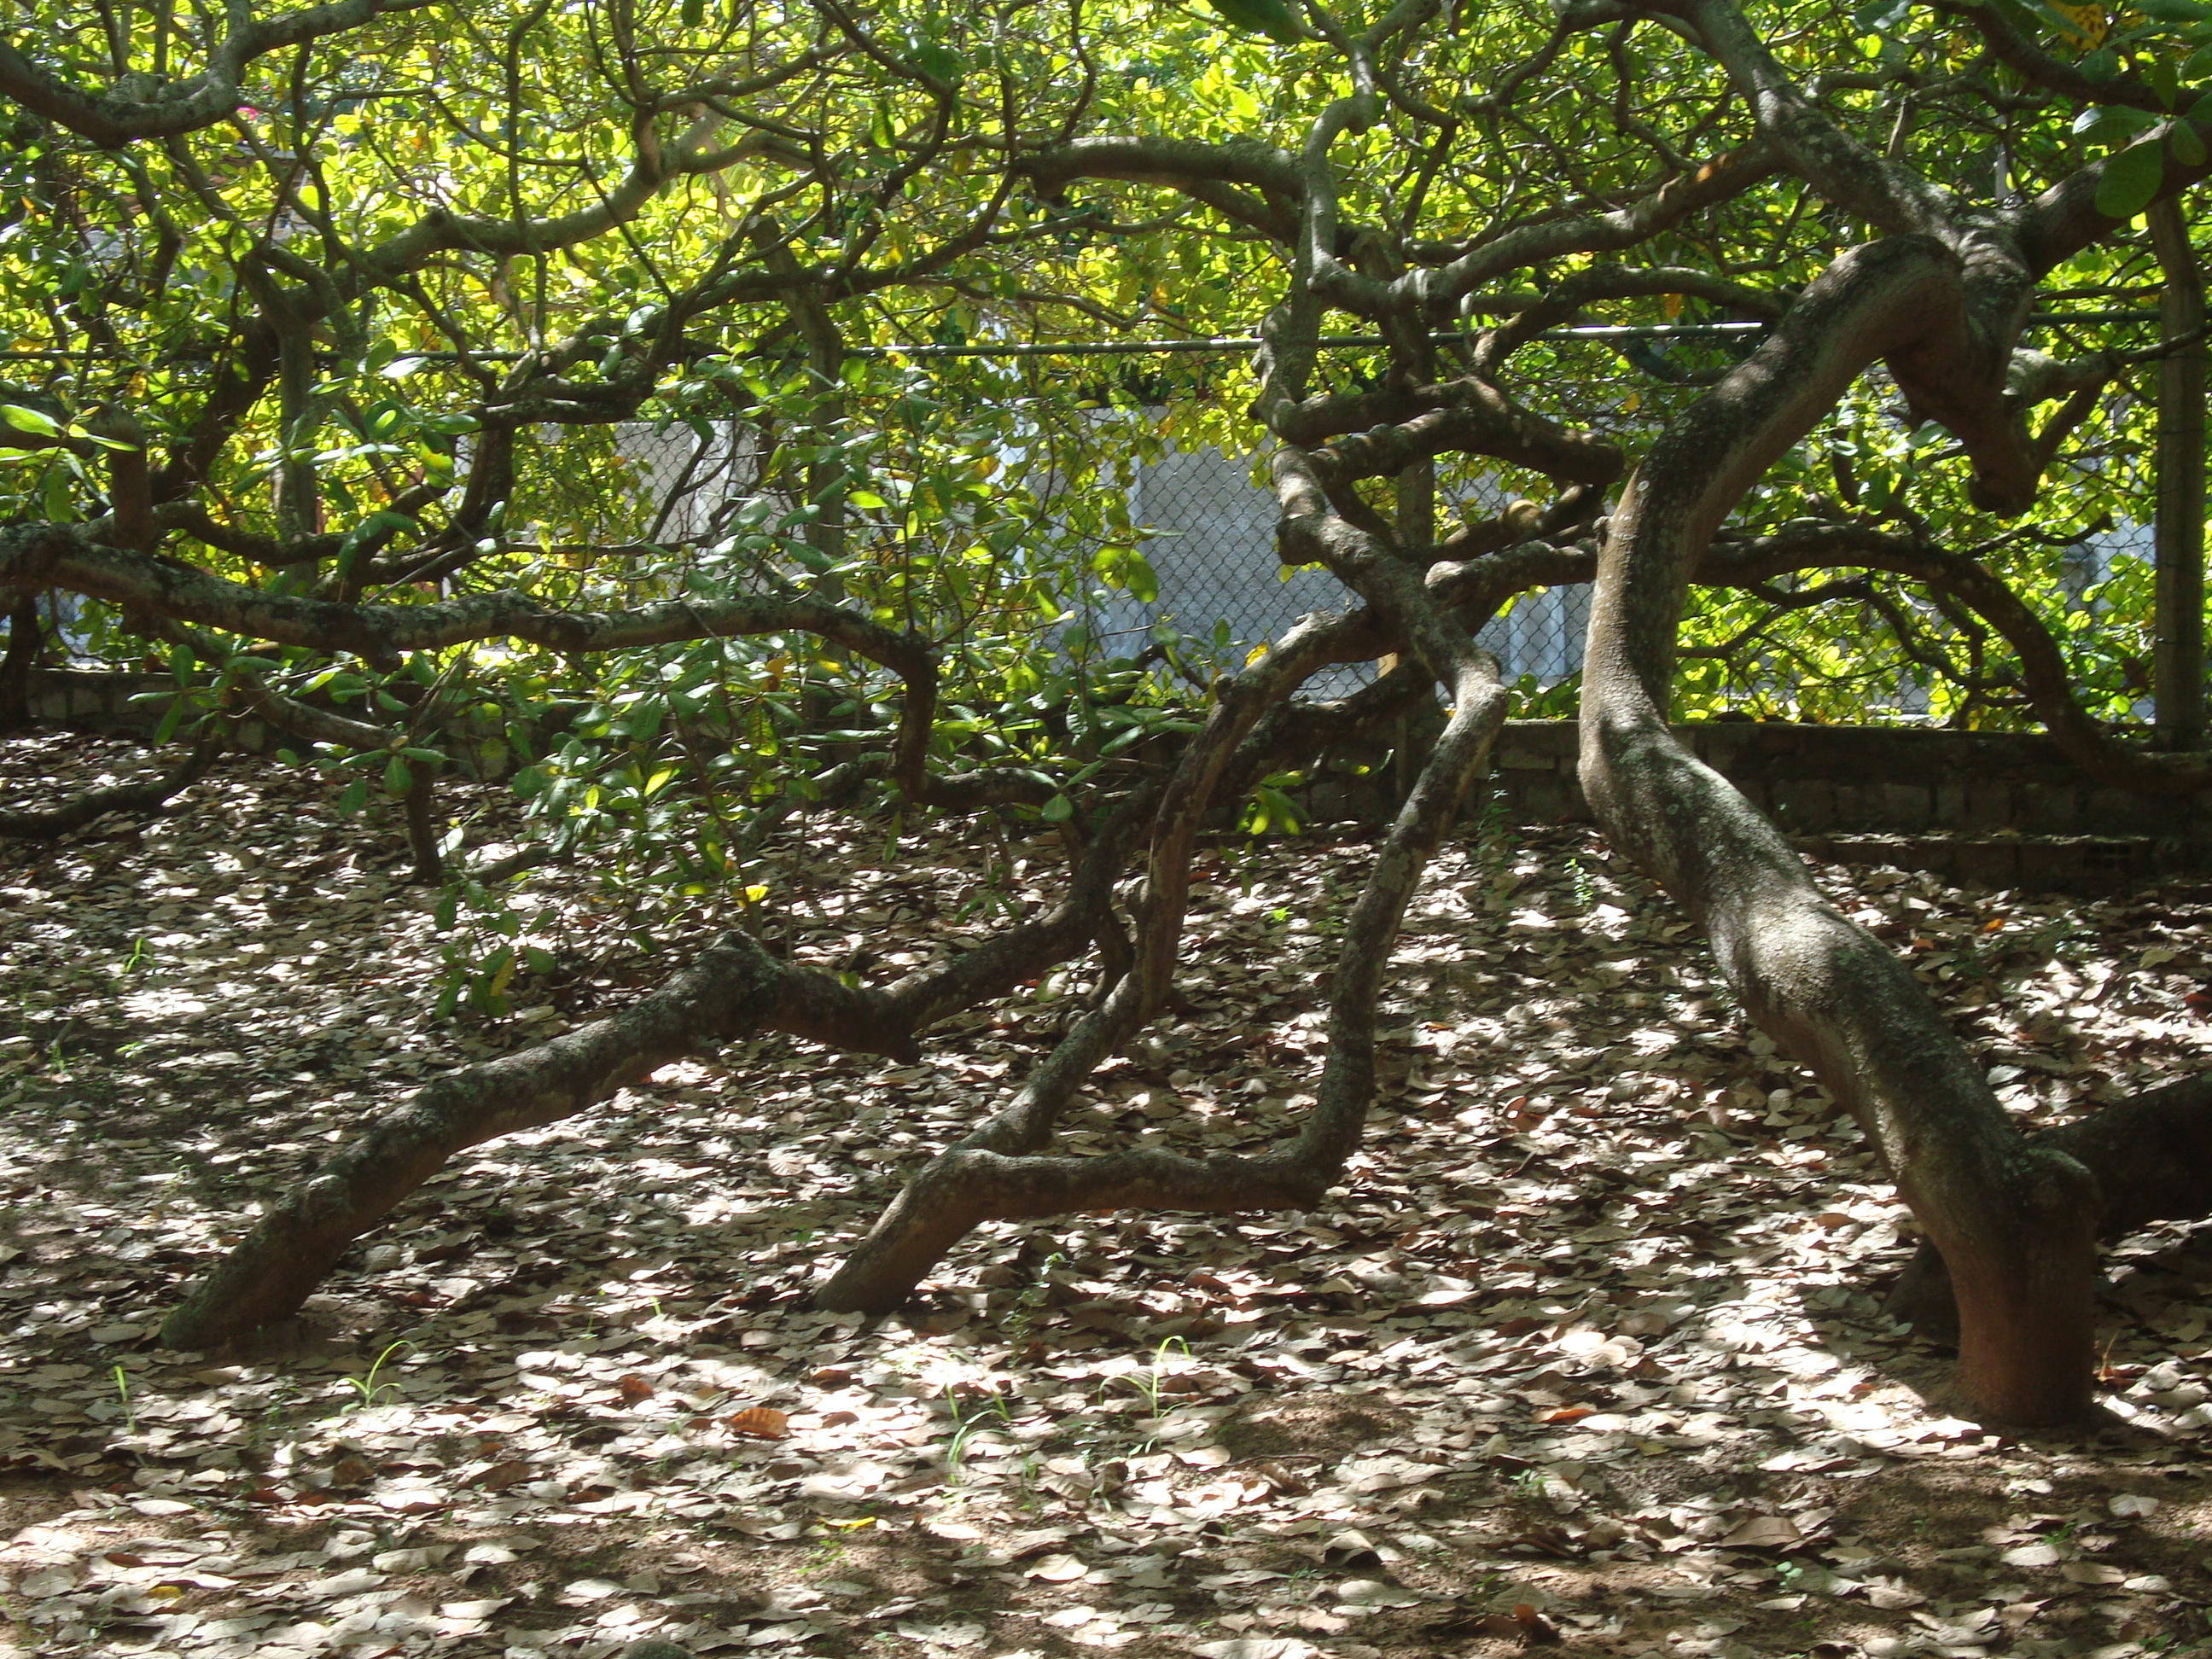 El mayor cajueiro (árbol de cajú) del mundo | Vive Pipa